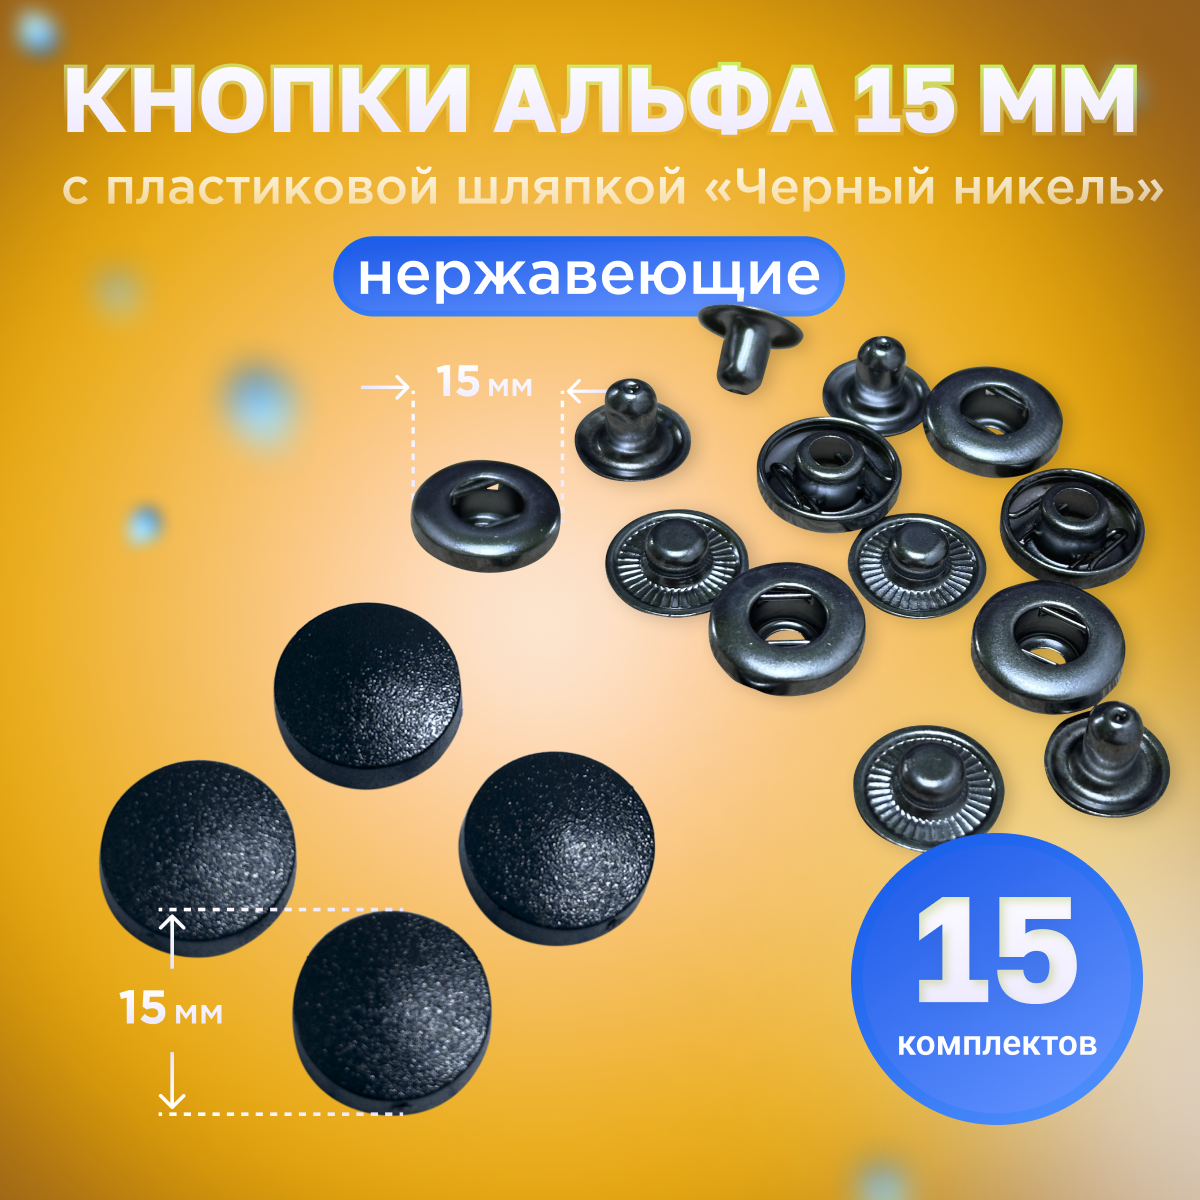 Кнопки Альфа 15мм, с пластиковой шляпкой нержавеющие, 15 штук в упаковке, черный